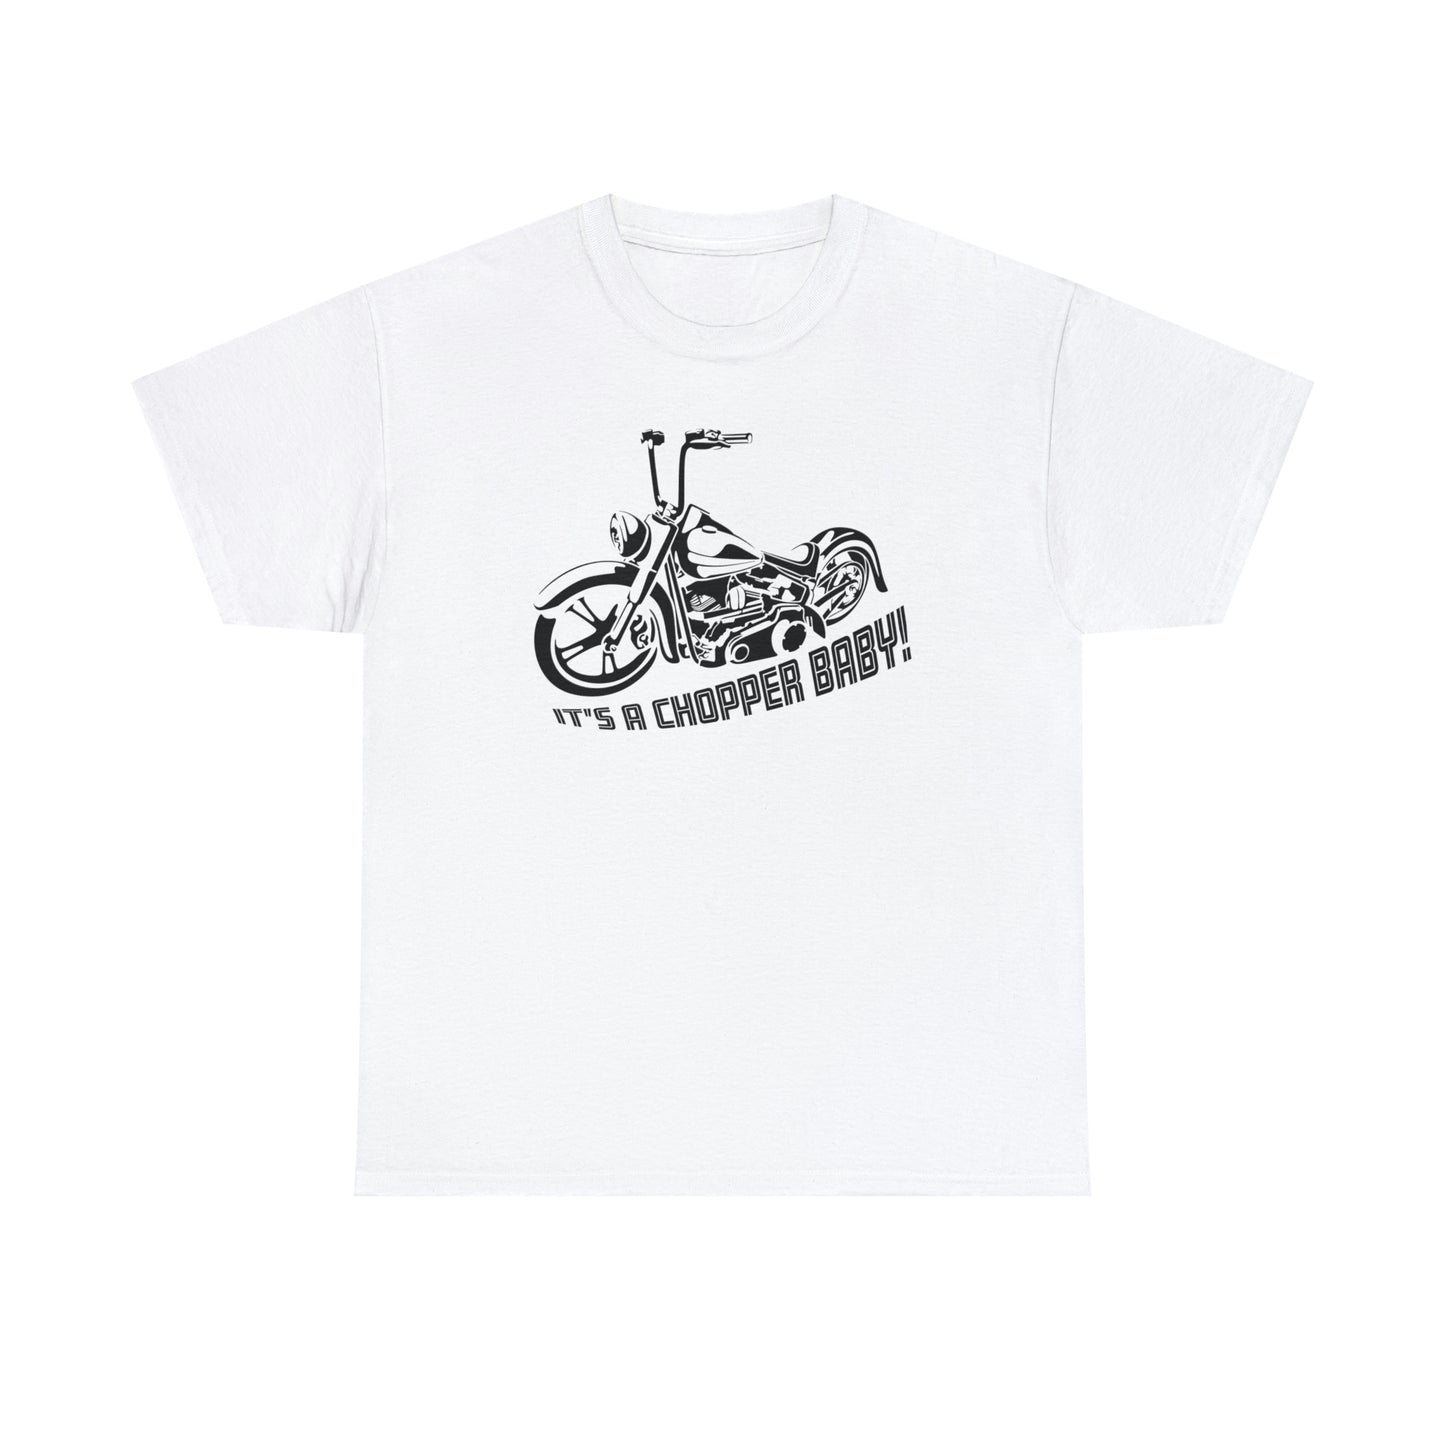 Chopper T-Shirt For Motorcyclist T Shirt For Biker TShirt For Biker Babe Shirt For Motorcycle Enthusiast Gift For Biker T-Shirt